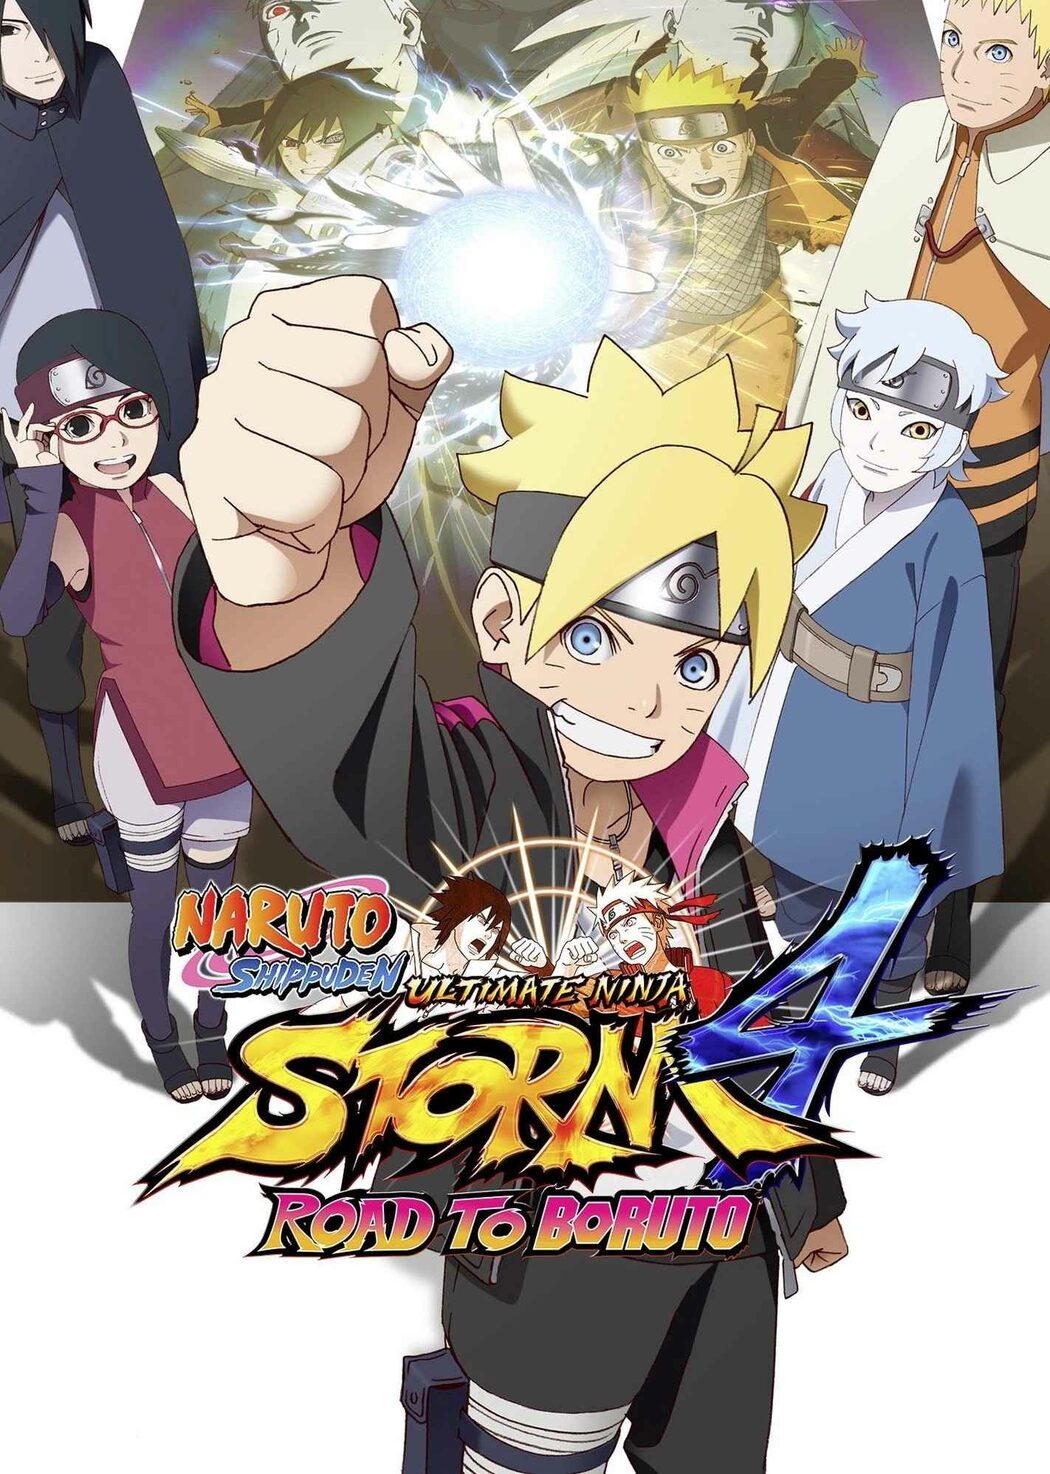 NUNS4 Road To Boruto - How To Unlock Boruto Vs Naruto Boss Fight 